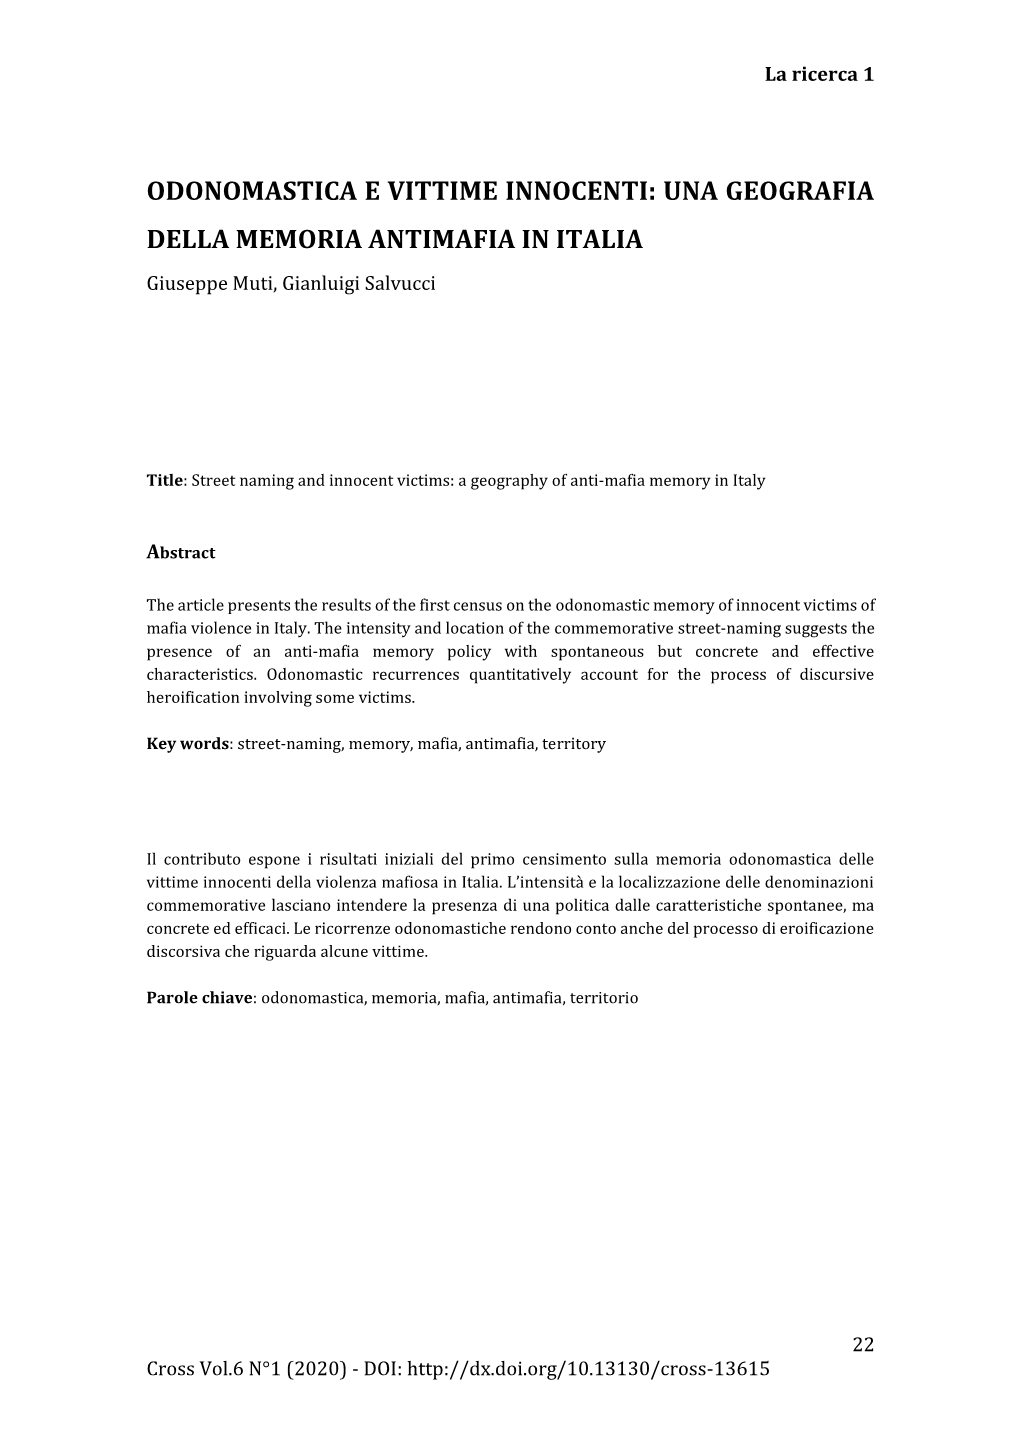 ODONOMASTICA E VITTIME INNOCENTI: UNA GEOGRAFIA DELLA MEMORIA ANTIMAFIA in ITALIA Giuseppe Muti, Gianluigi Salvucci